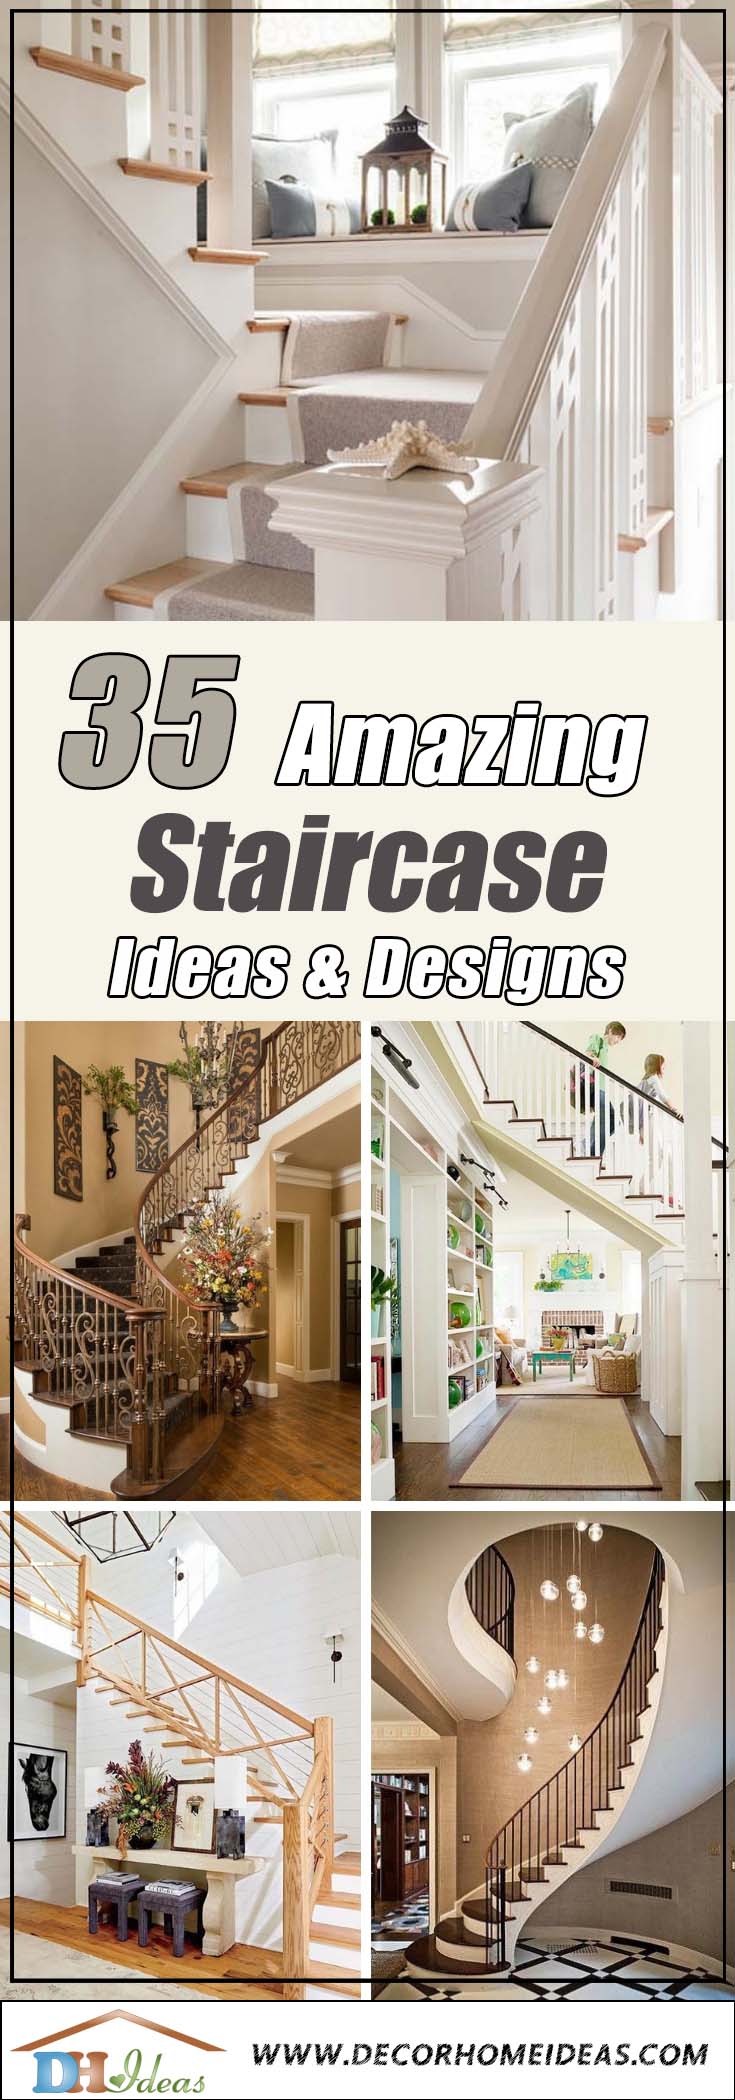 35 Amazing Staircase Ideas #staircase #stairway #stairs #staircaseideas #decorhomeideas